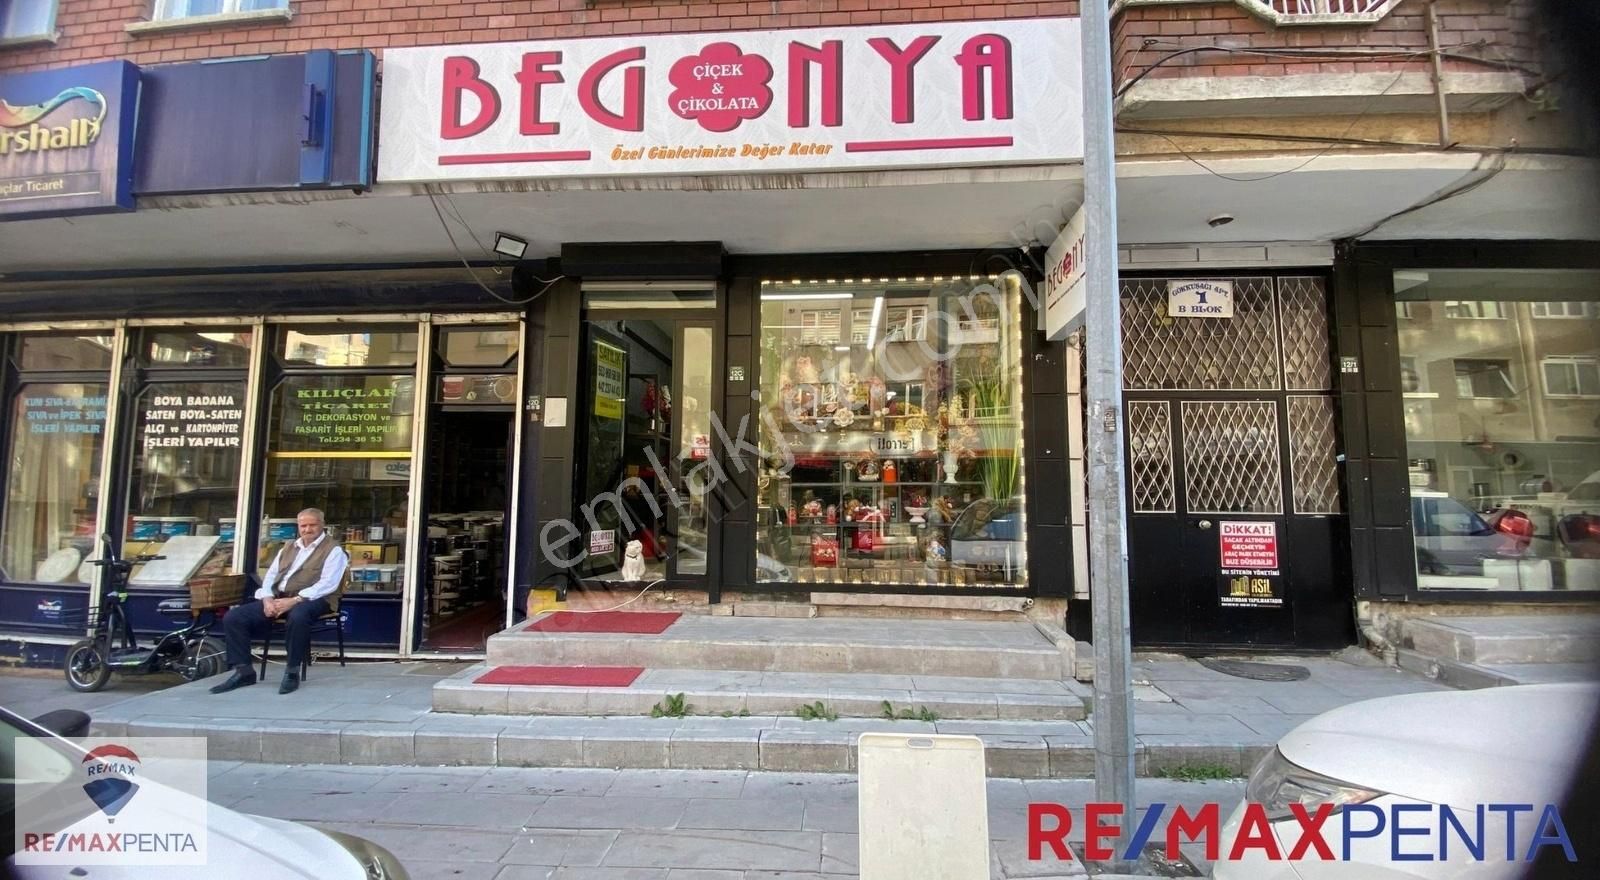 Yakutiye Lalapaşa Satılık Dükkan & Mağaza Remax Penta 'dan Gürcükapı 'da Satılık İşyeri